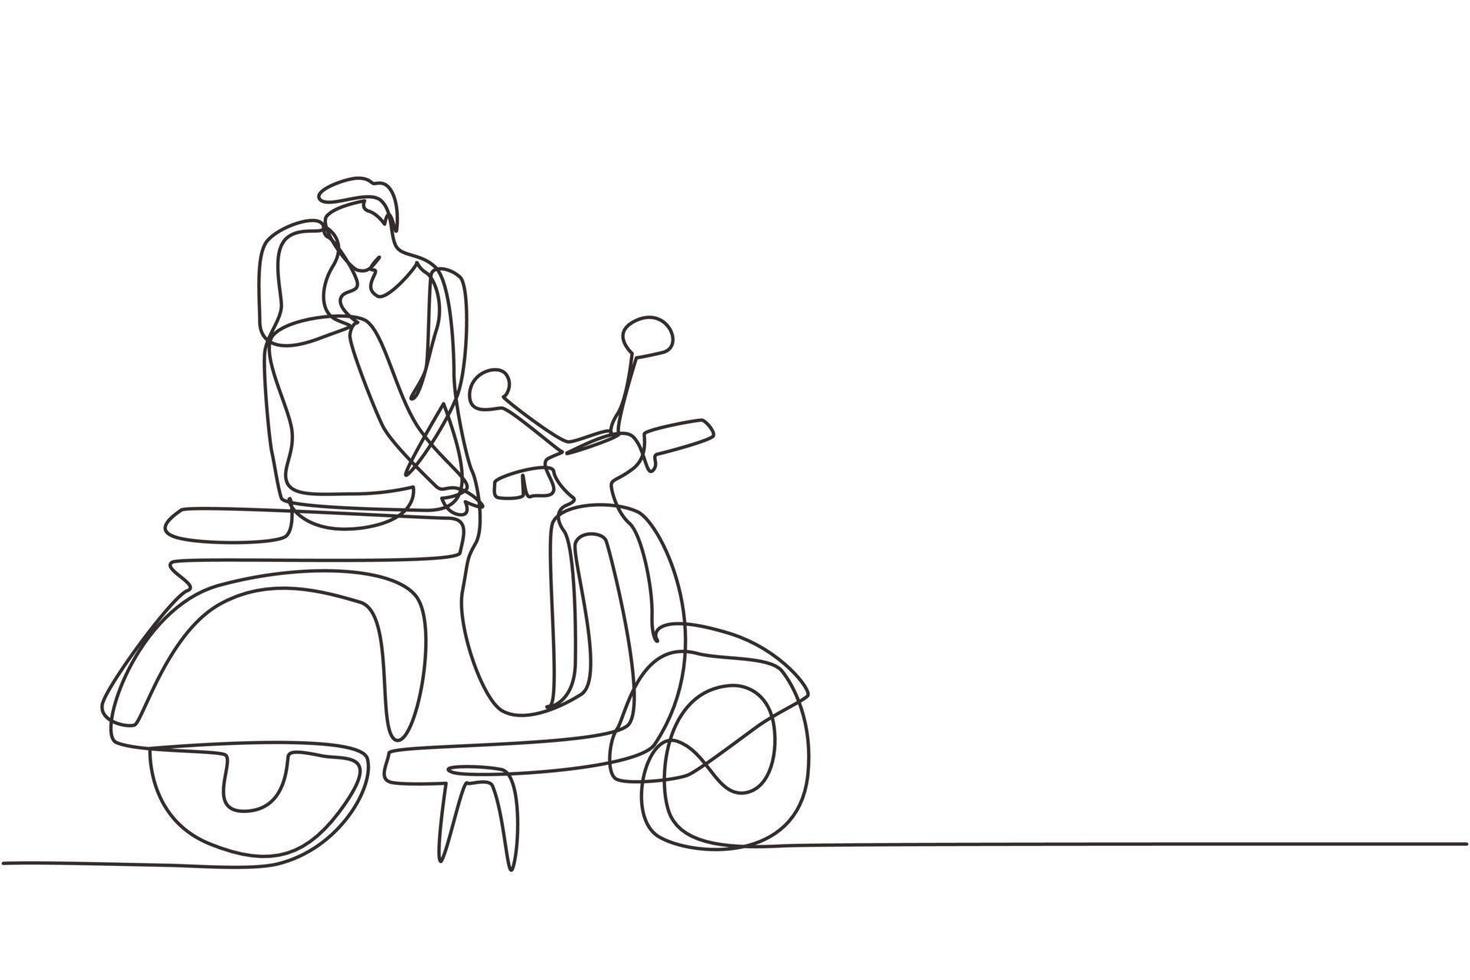 pareja de dibujo de una sola línea continua en una cita al aire libre, novia y novio con motocicleta, relación amorosa. viaje romántico por carretera, viaje. ilustración de vector de diseño gráfico de dibujo de una línea